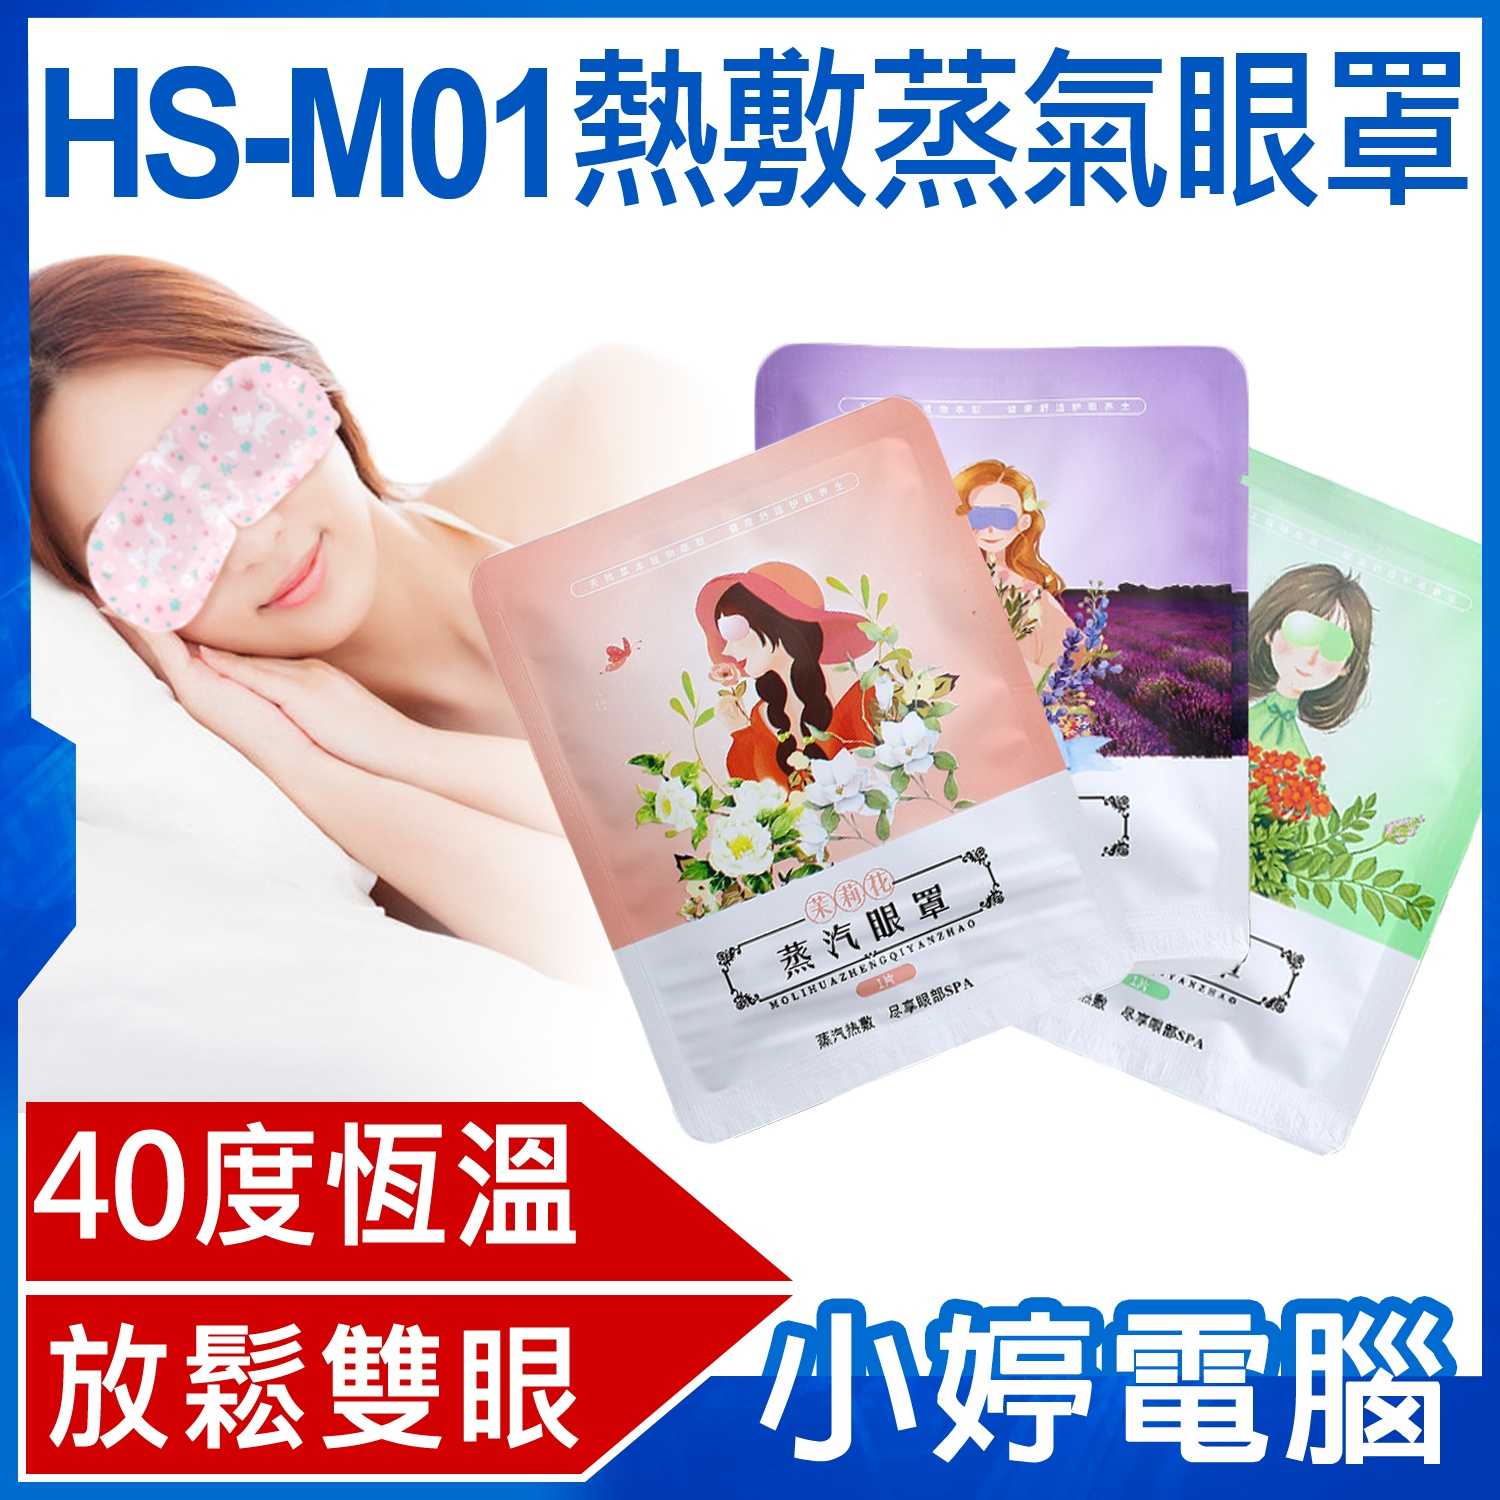 【小婷電腦】HS-M01熱敷蒸氣眼罩 40度恆溫 30分鐘長效發熱 薰香SPA 舒緩疲勞 睡眠眼罩